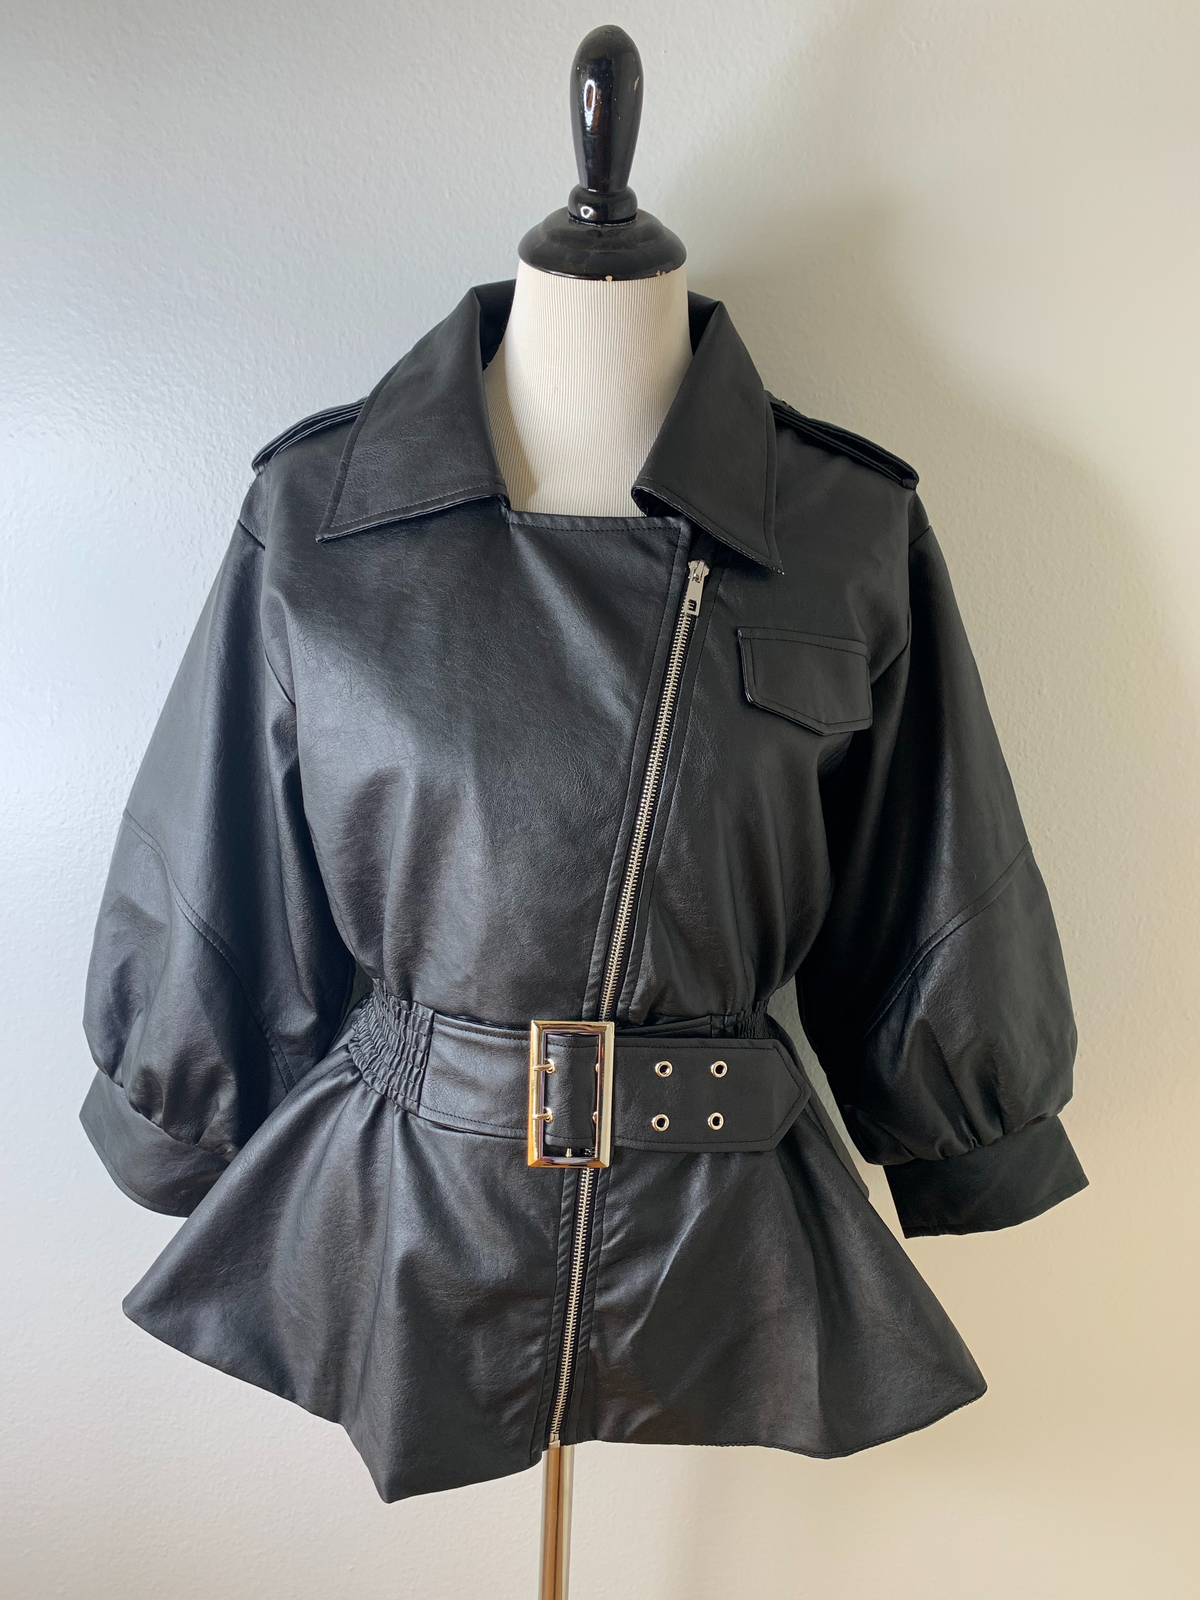  Leather Peplum Jacket | black leather peplum jacket | faux leather peplum jacket